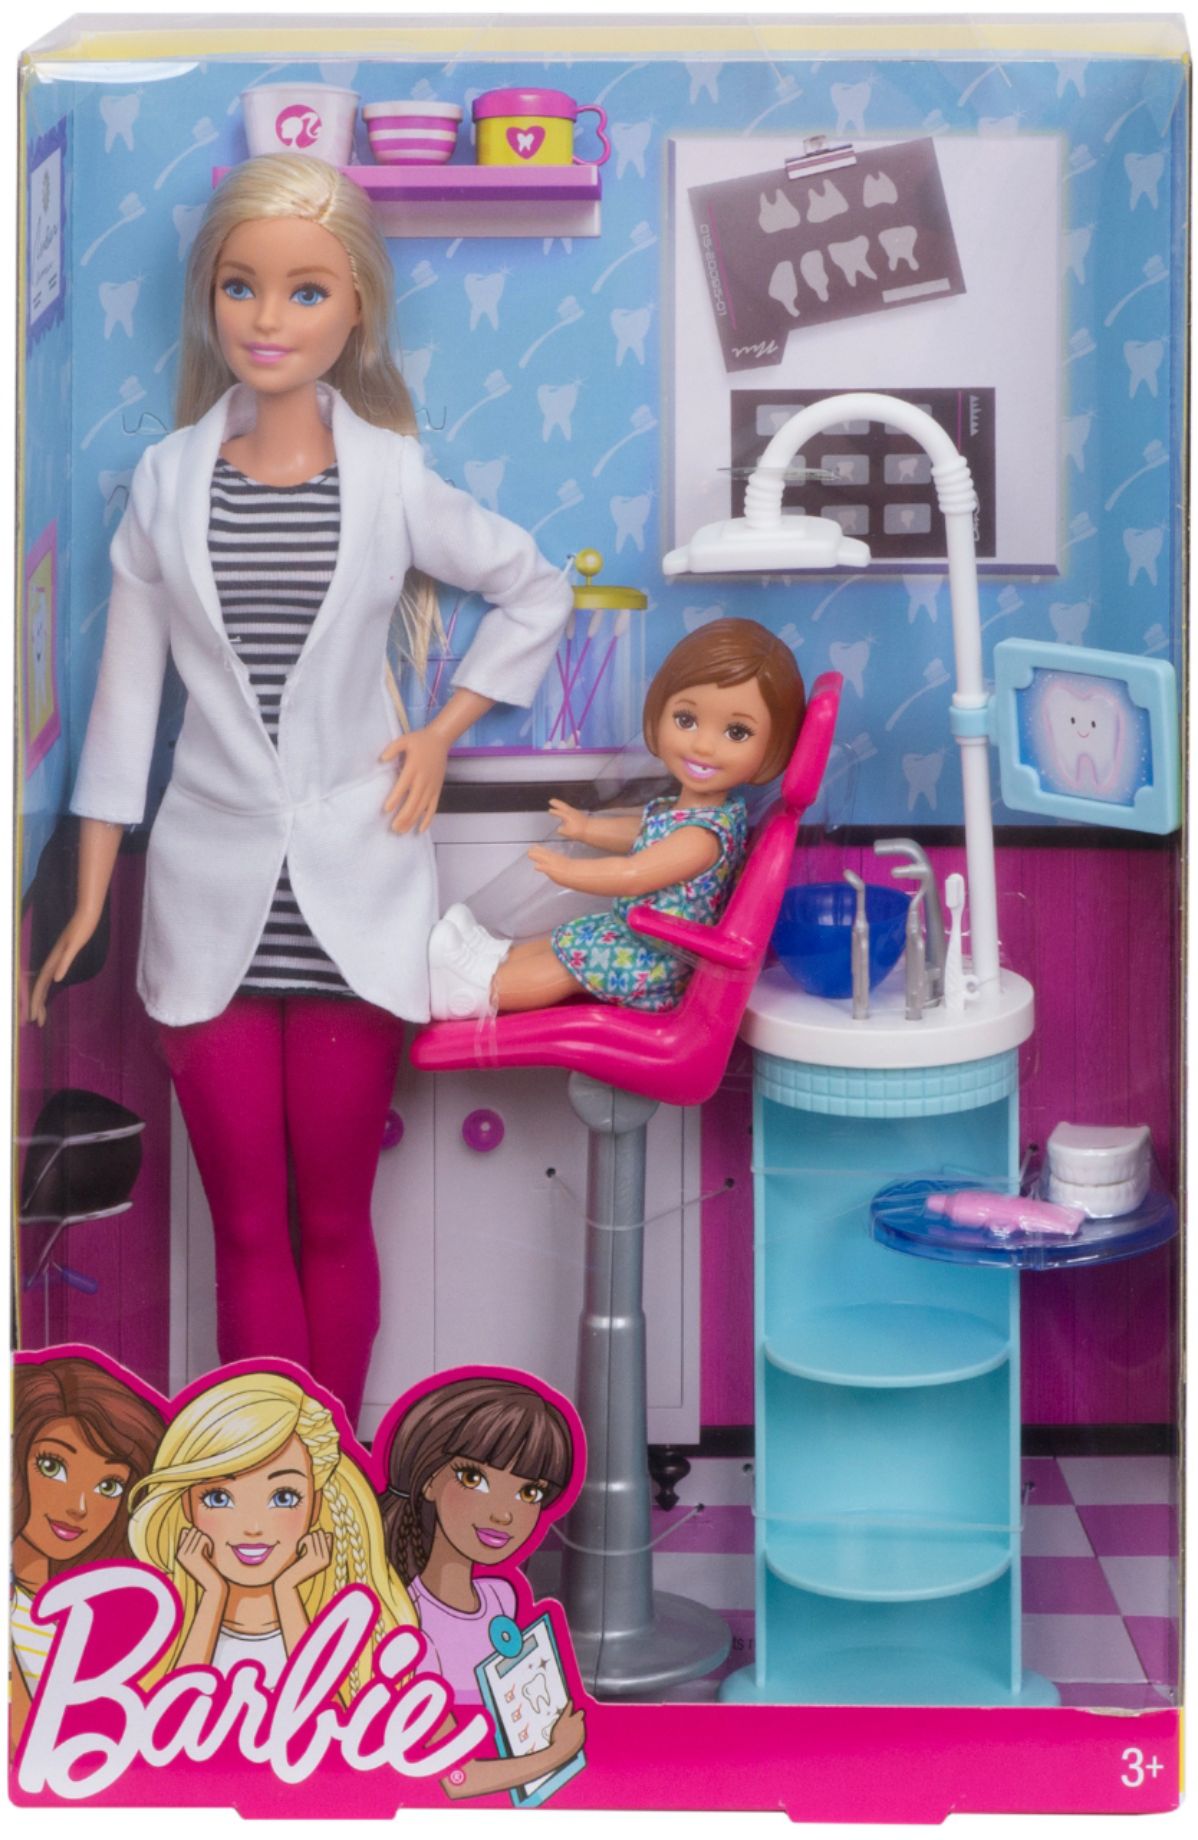 Amerika Vorige Buurt Best Buy: Barbie Career Play Set Styles May Vary DHB63